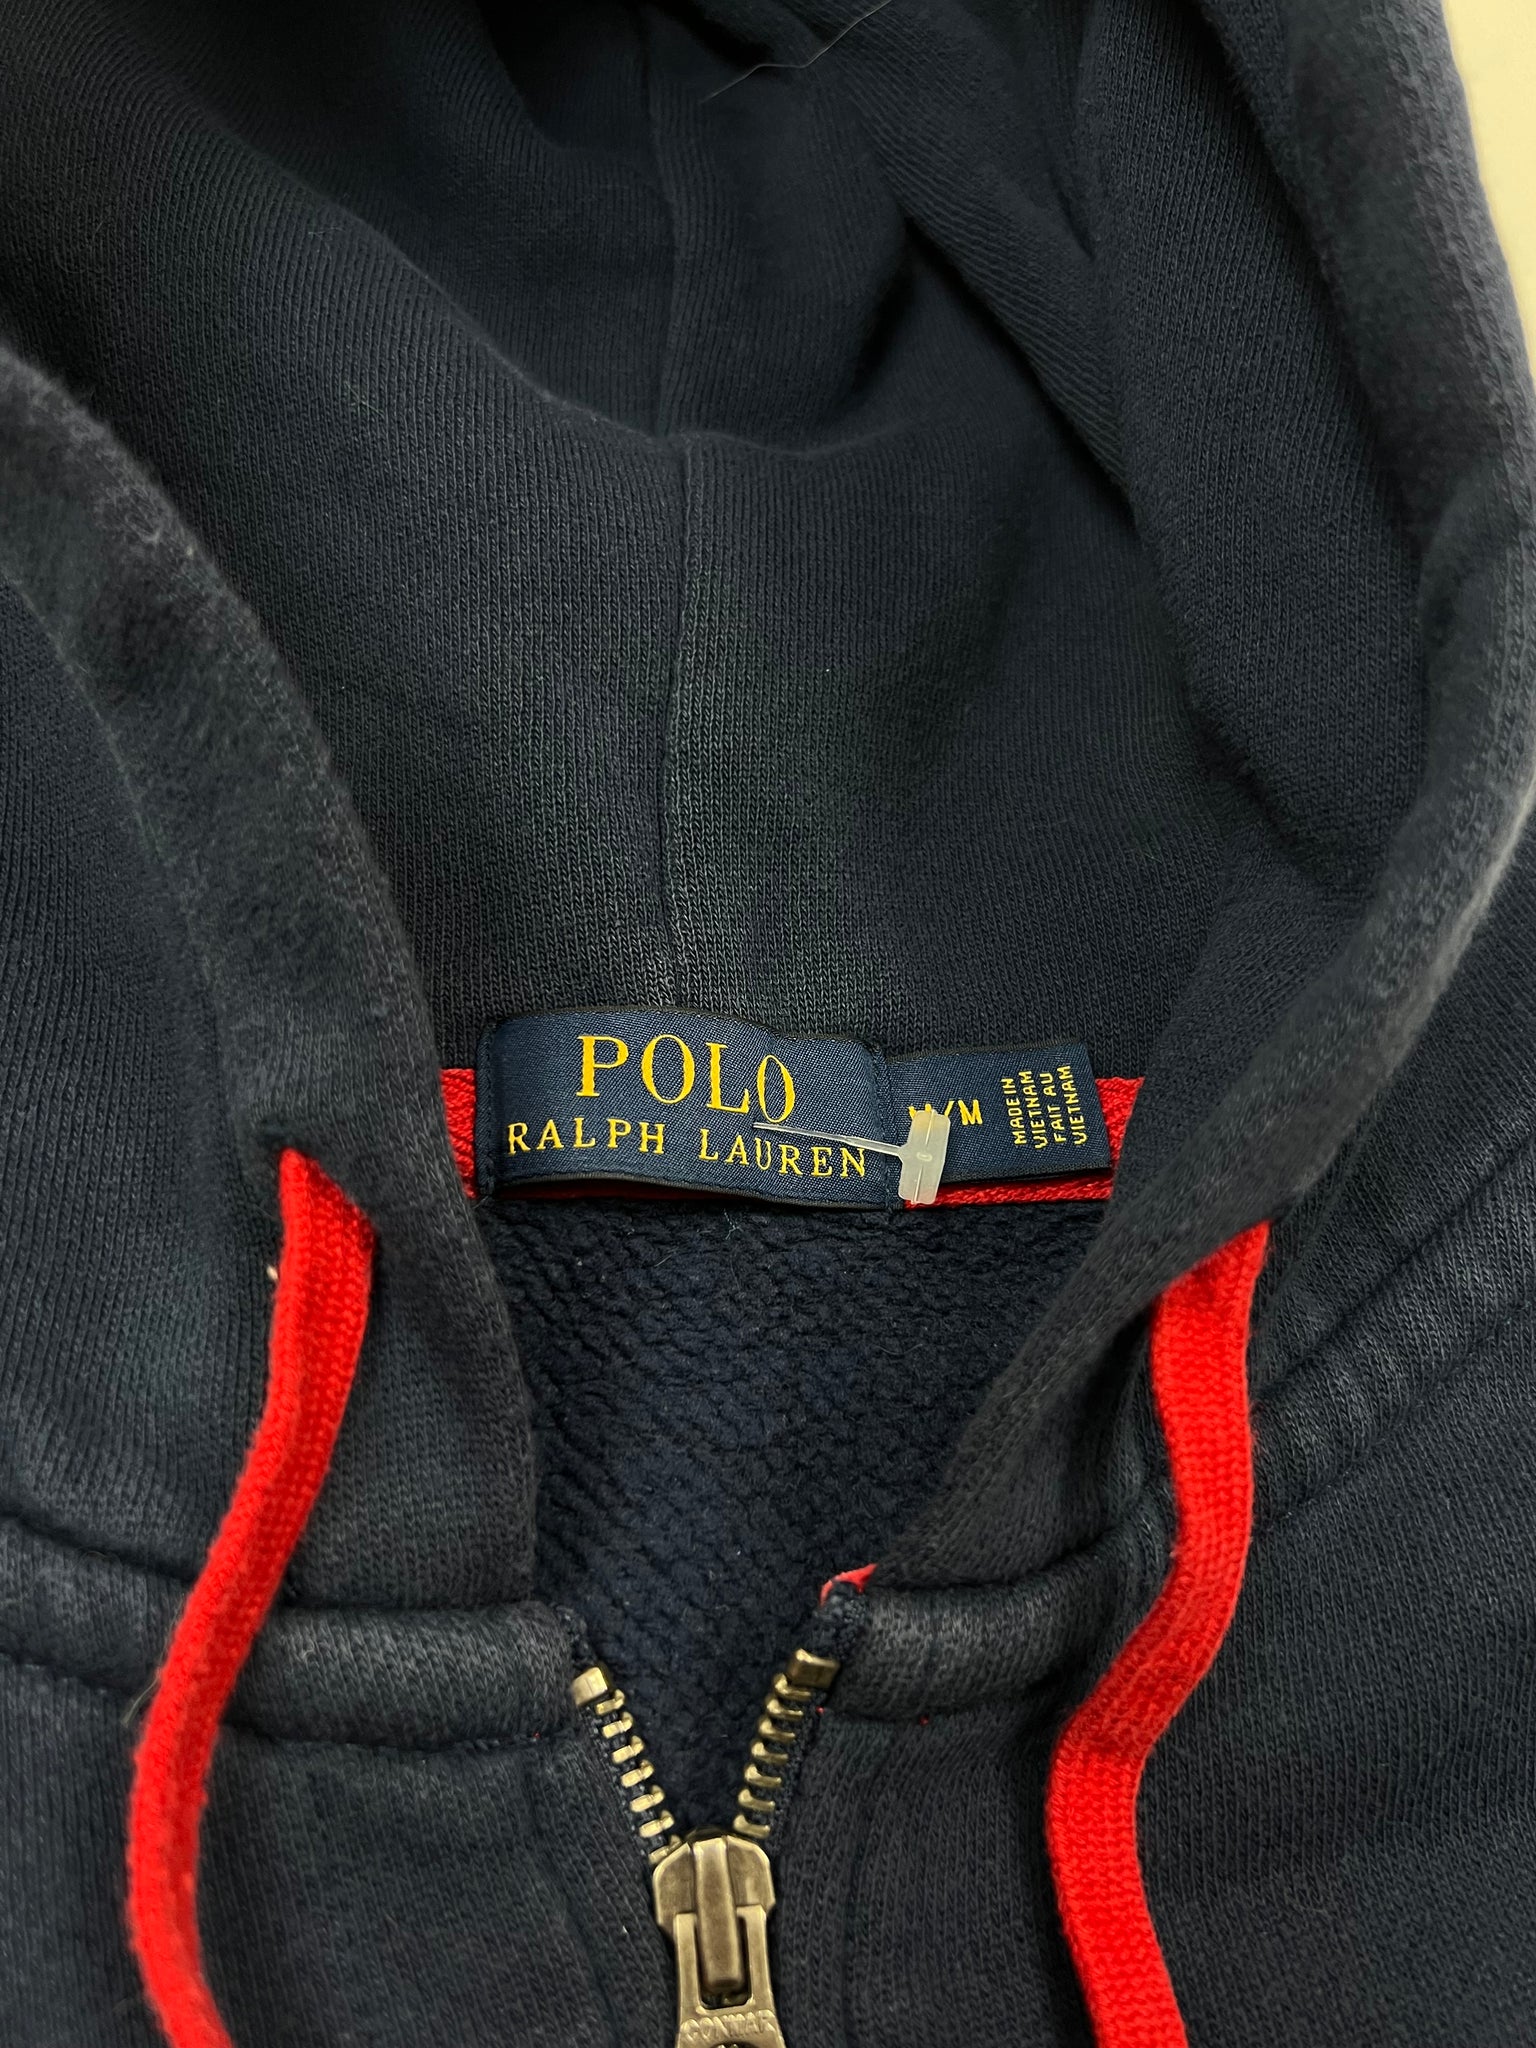 Polo Ralph Lauren Zip Up (M)